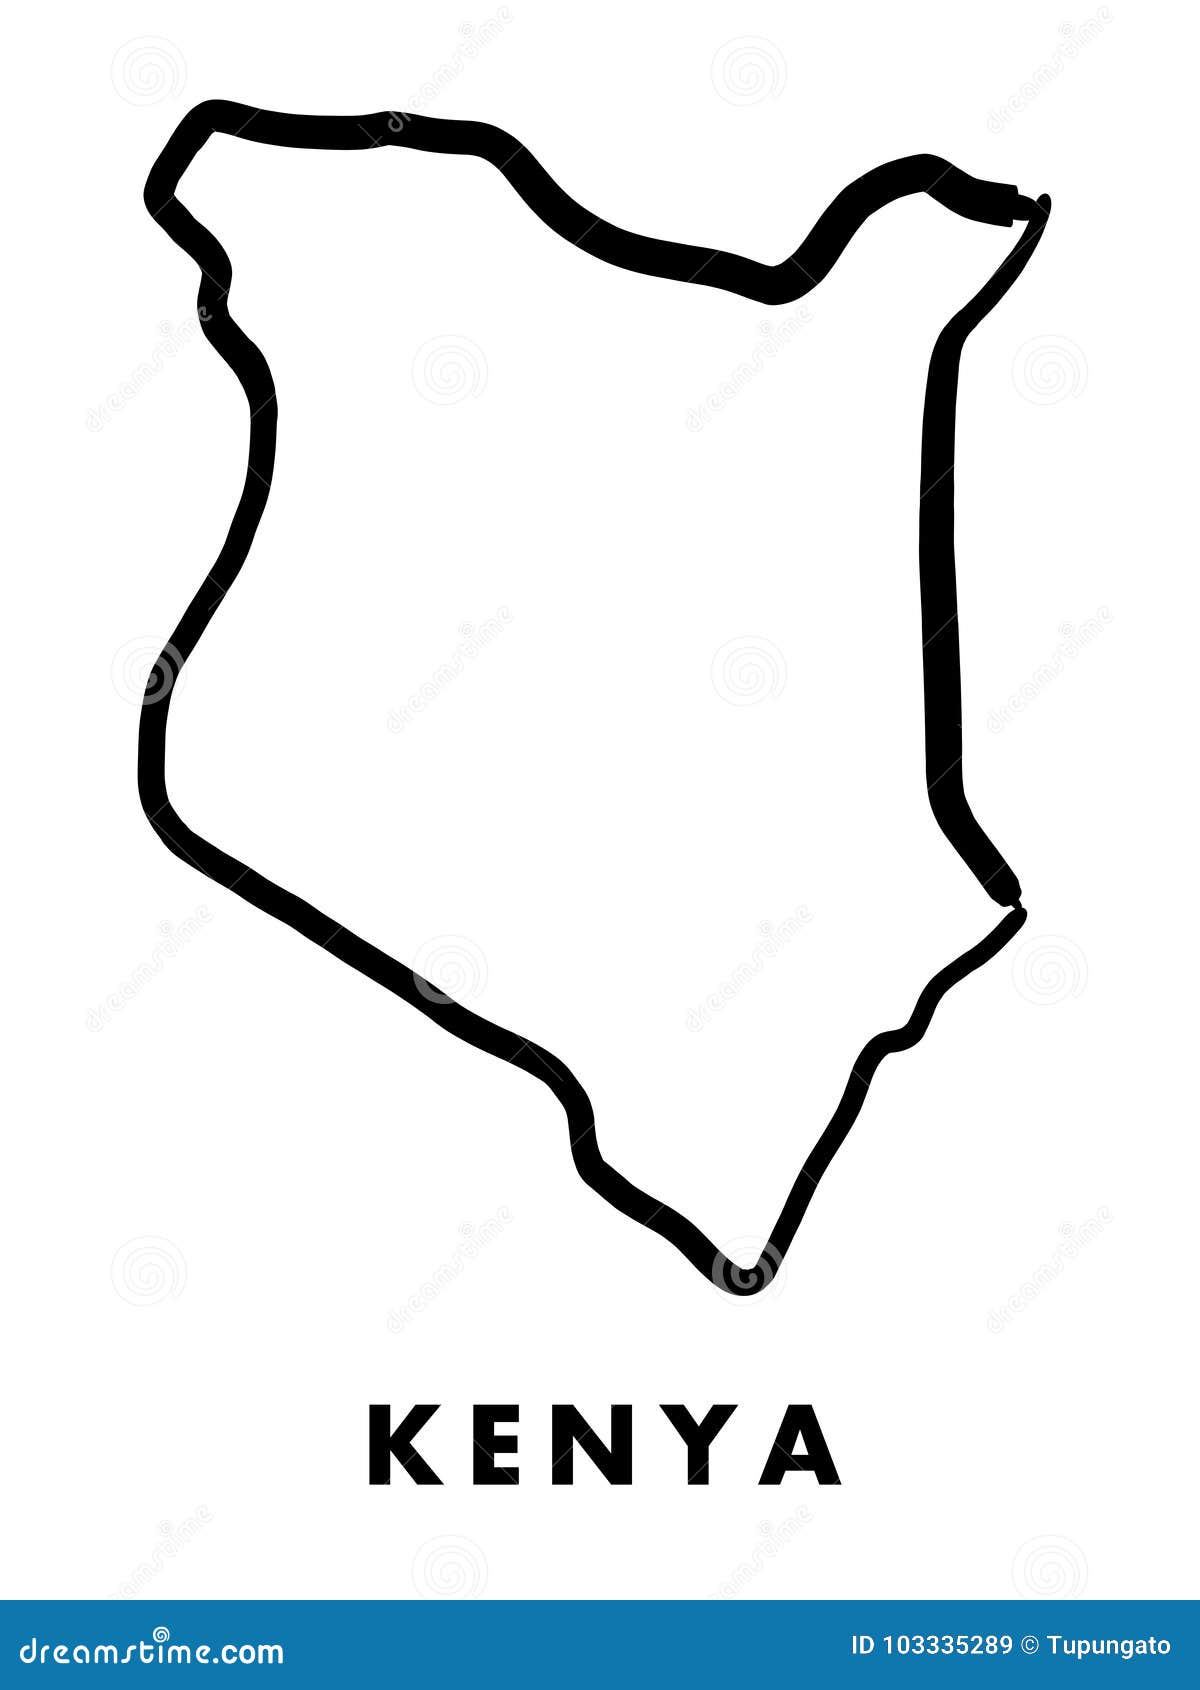 kenya map outline